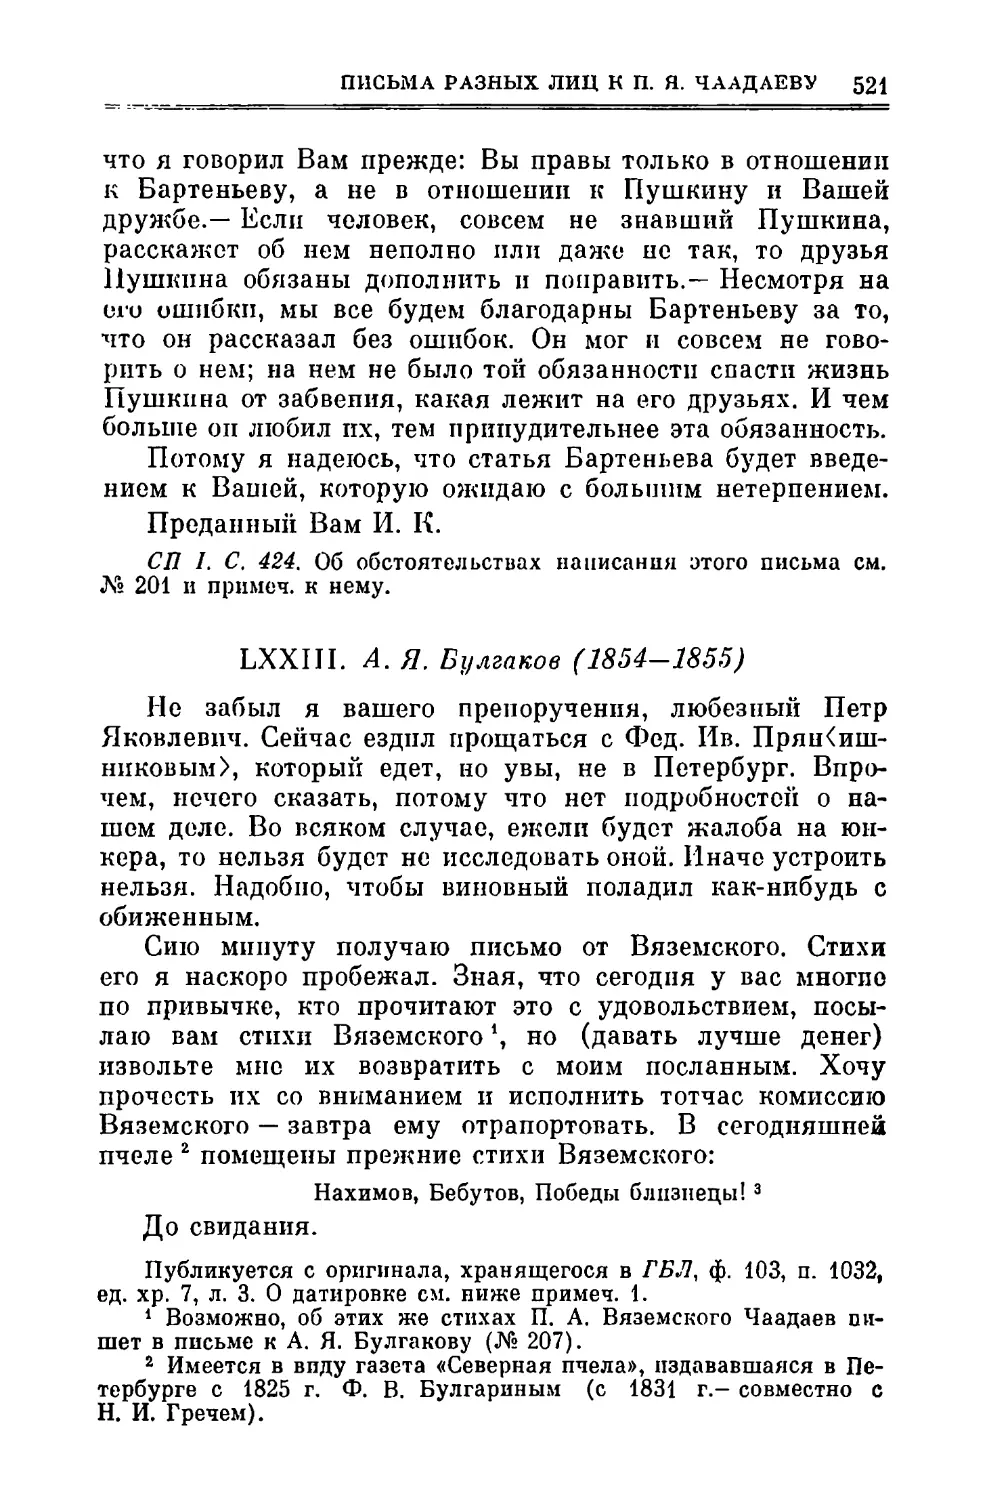 LXXIII. Булгаков А.Я. 1854—1855